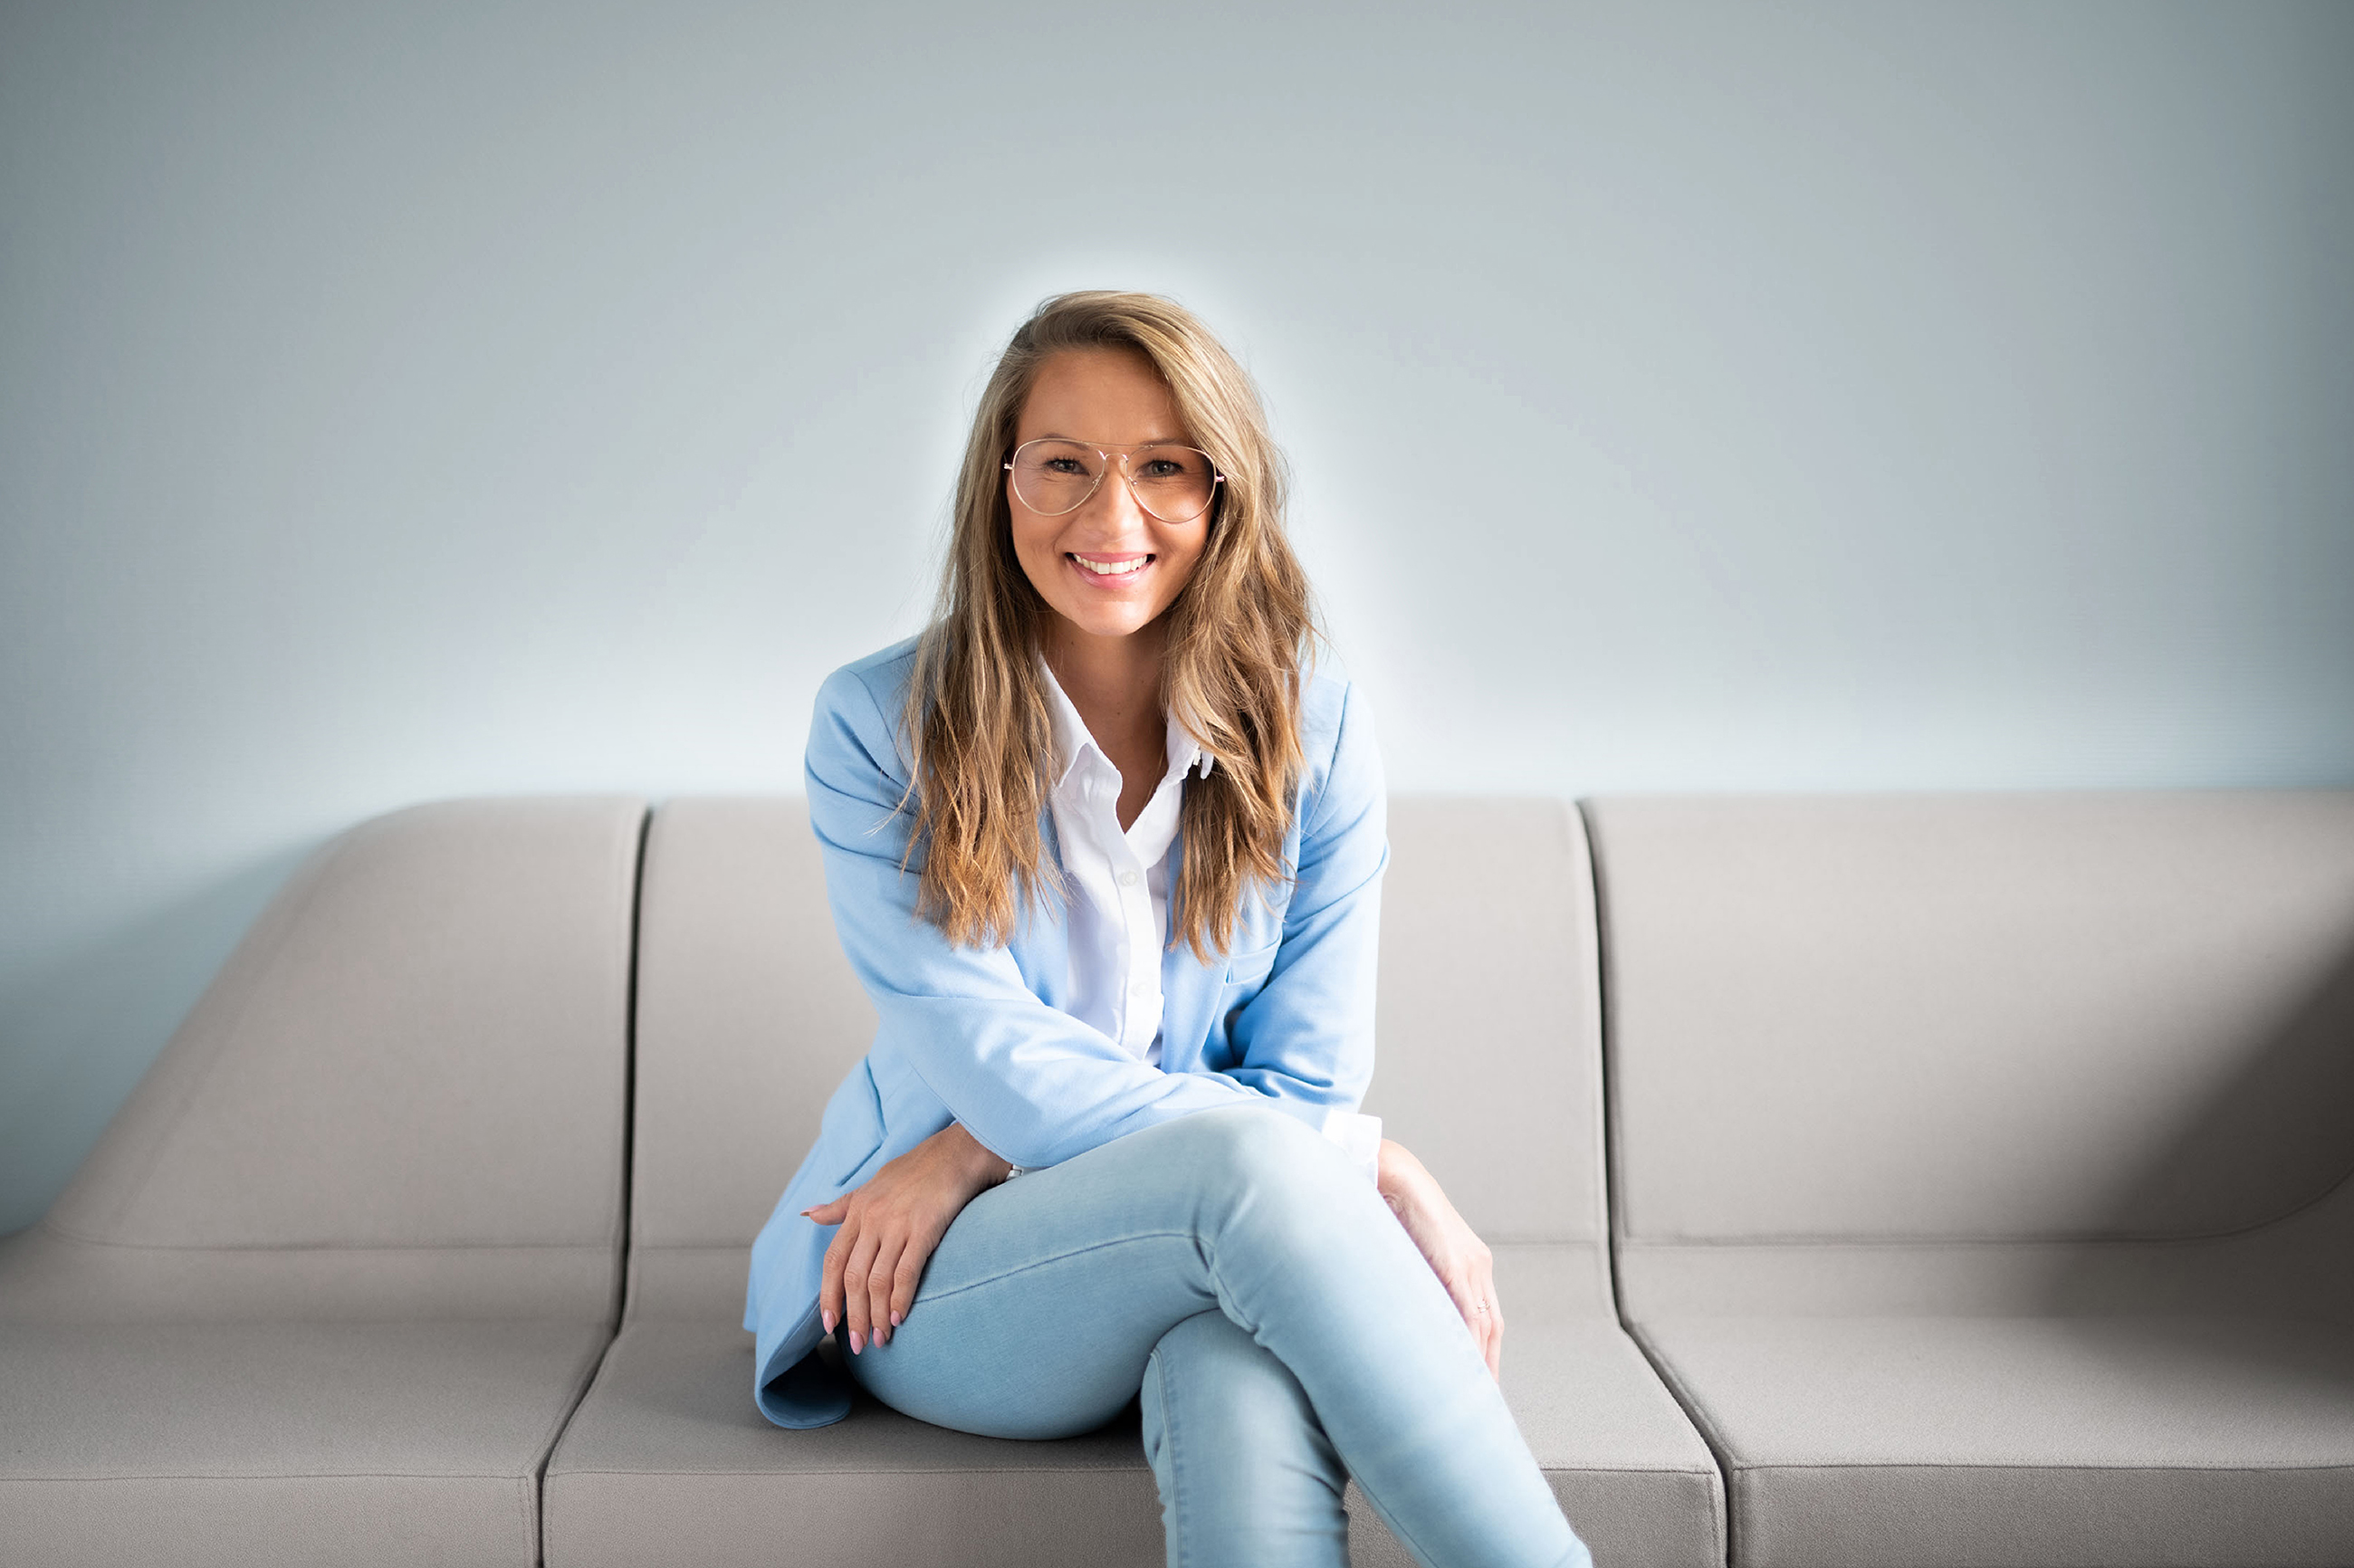 Junge Frau mit Brille sitzt in hellblau gekleidet auf einem modernen Sofa und blickt lächelnd in die Kamera. 